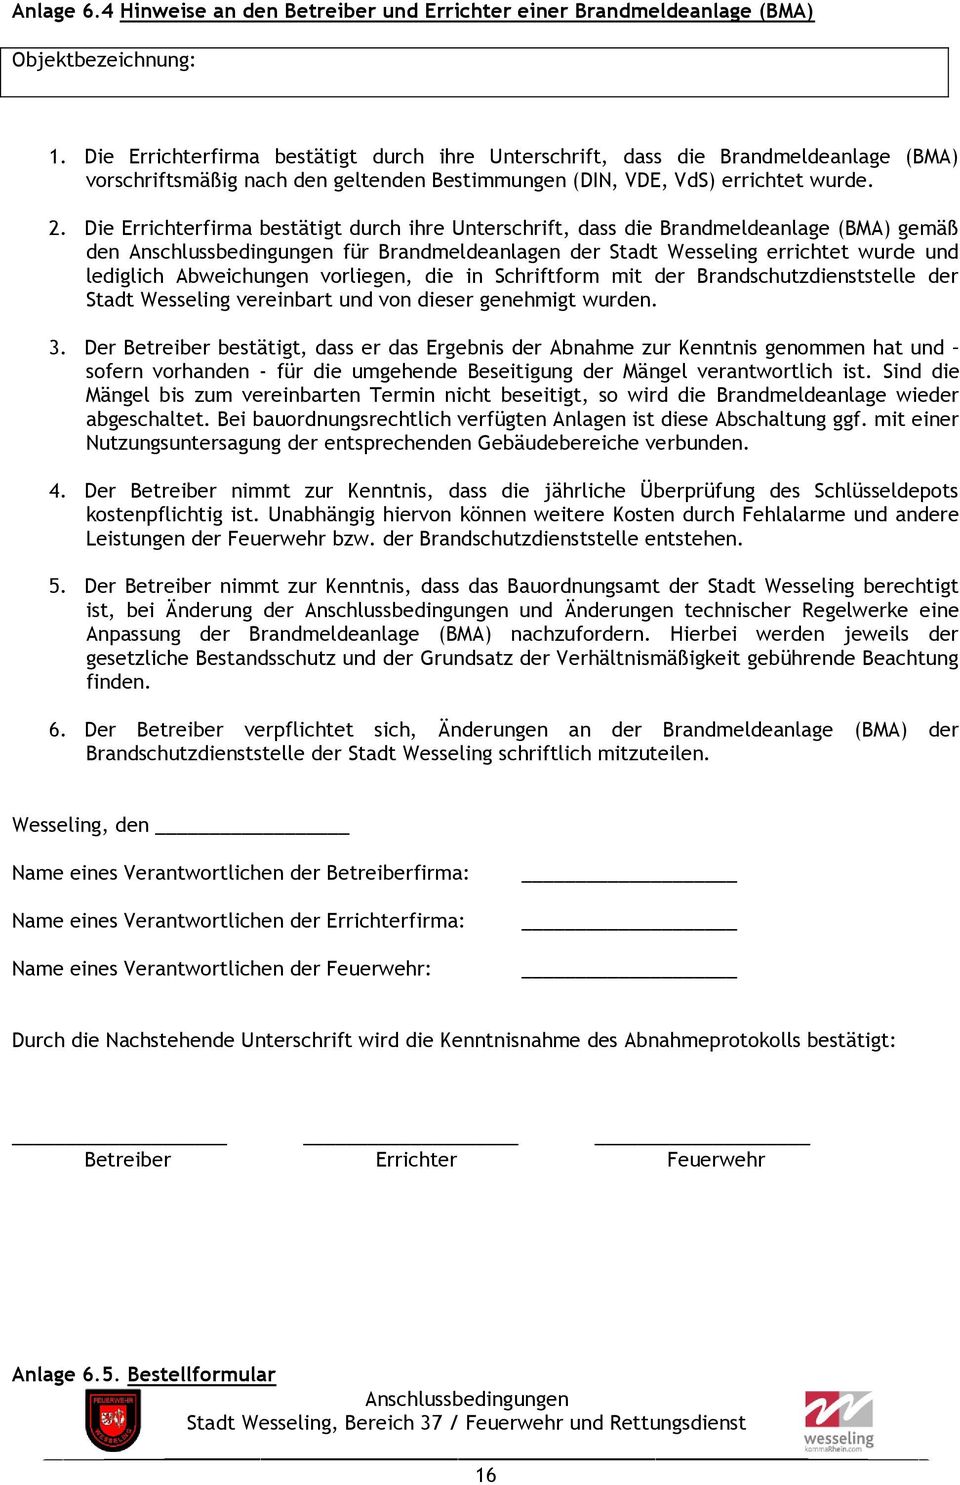 Die Errichterfirma bestätigt durch ihre Unterschrift, dass die Brandmeldeanlage (BMA) gemäß den für Brandmeldeanlagen der Stadt Wesseling errichtet wurde und lediglich Abweichungen vorliegen, die in